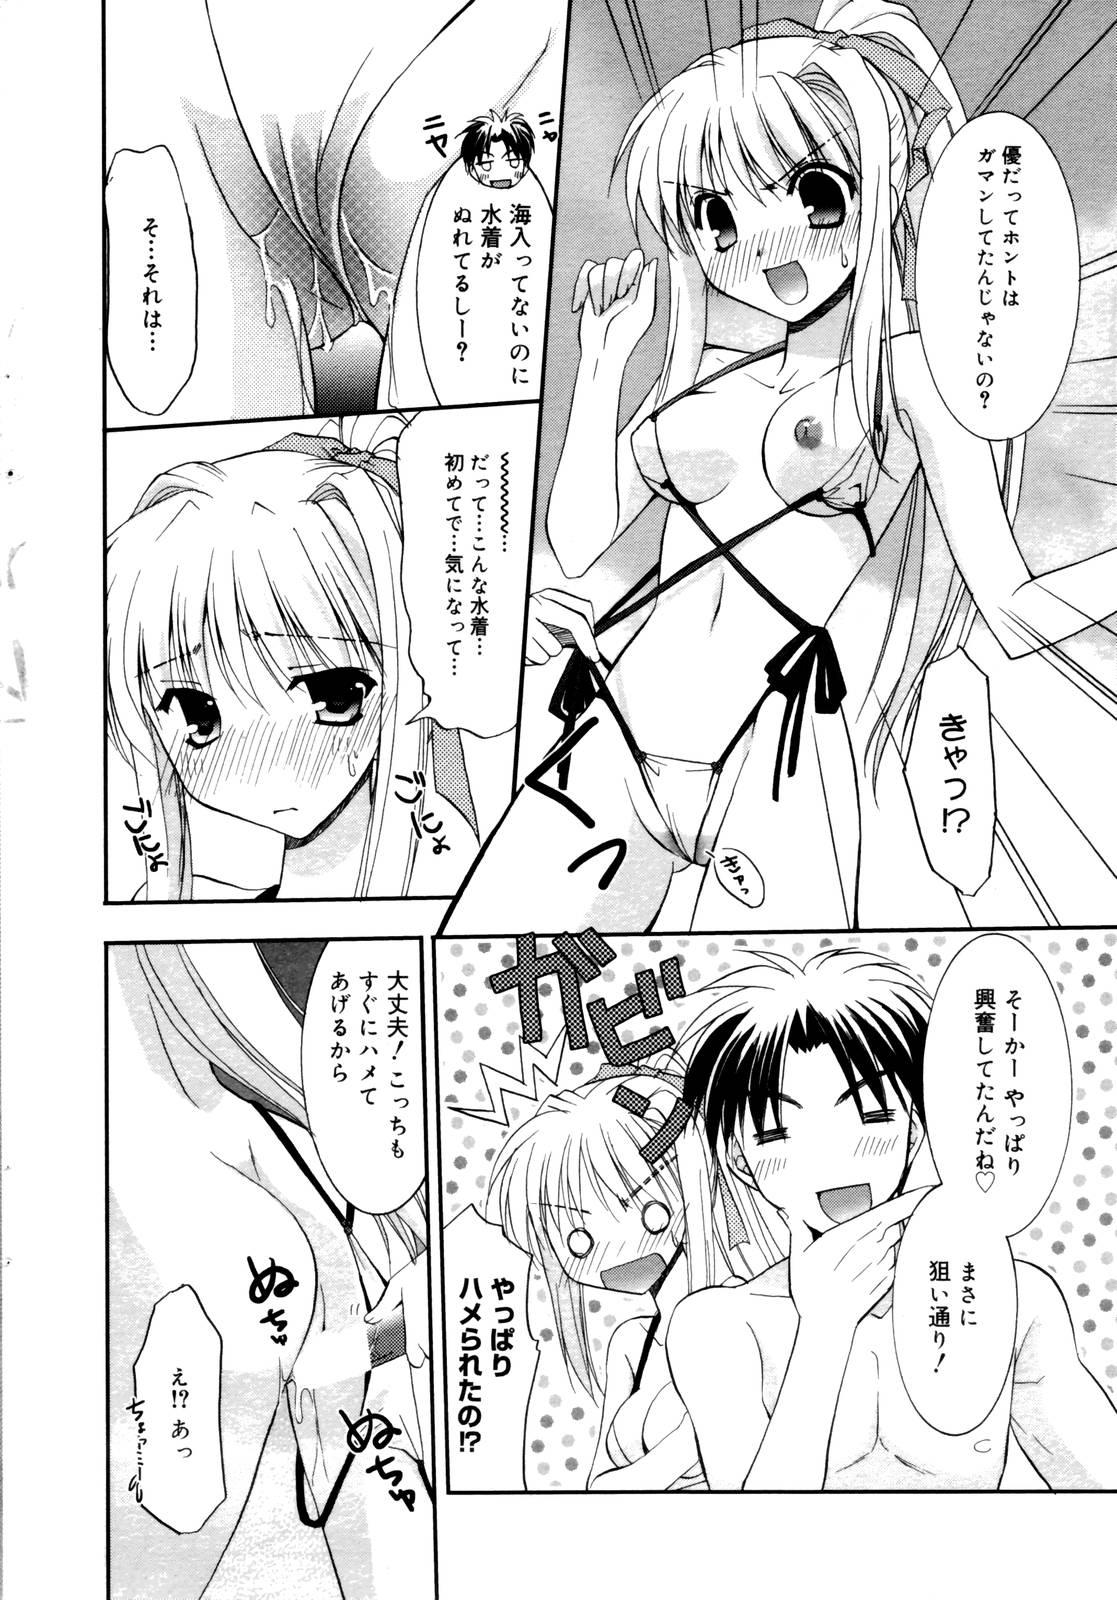 Smooth Manga Bangaichi 2006-10 3way - Page 14